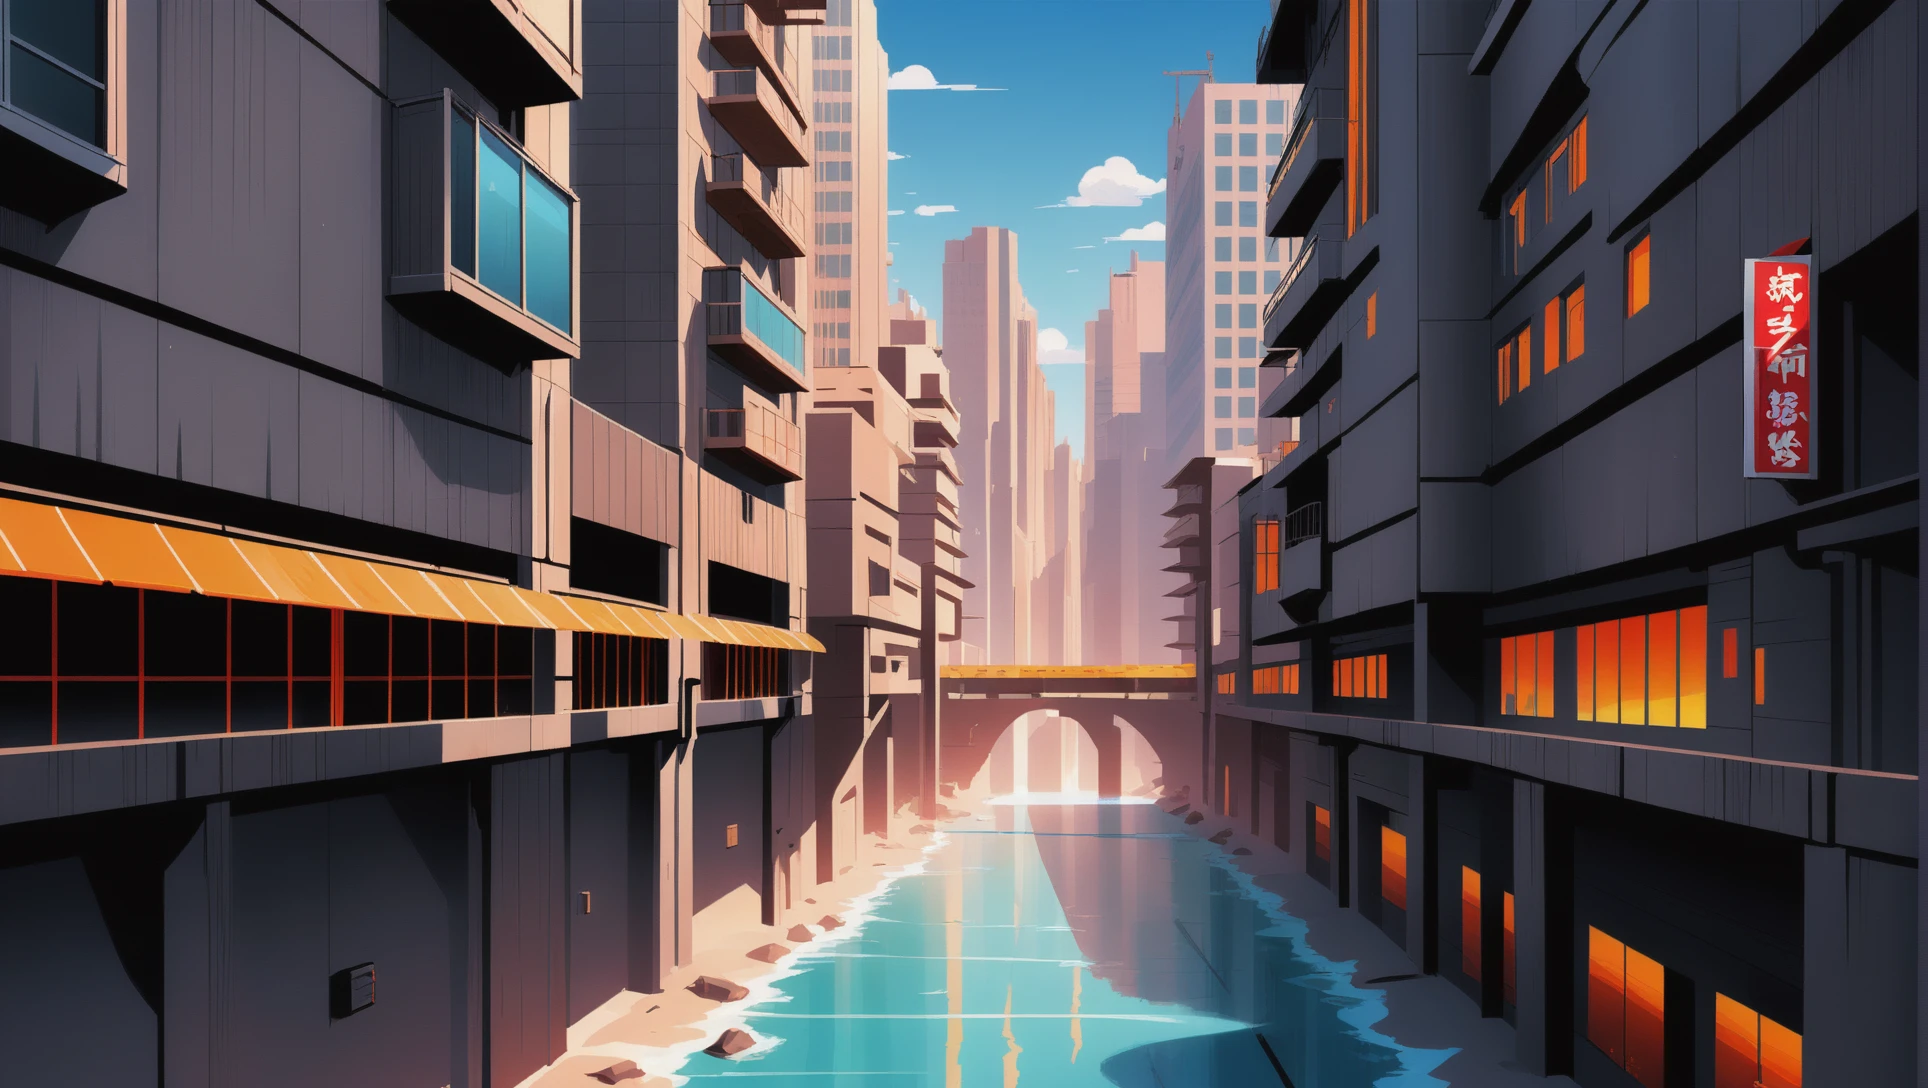 Matte Painting im Anime-Stil, eine dystopische Fantasy-Metropole an einer Klippe